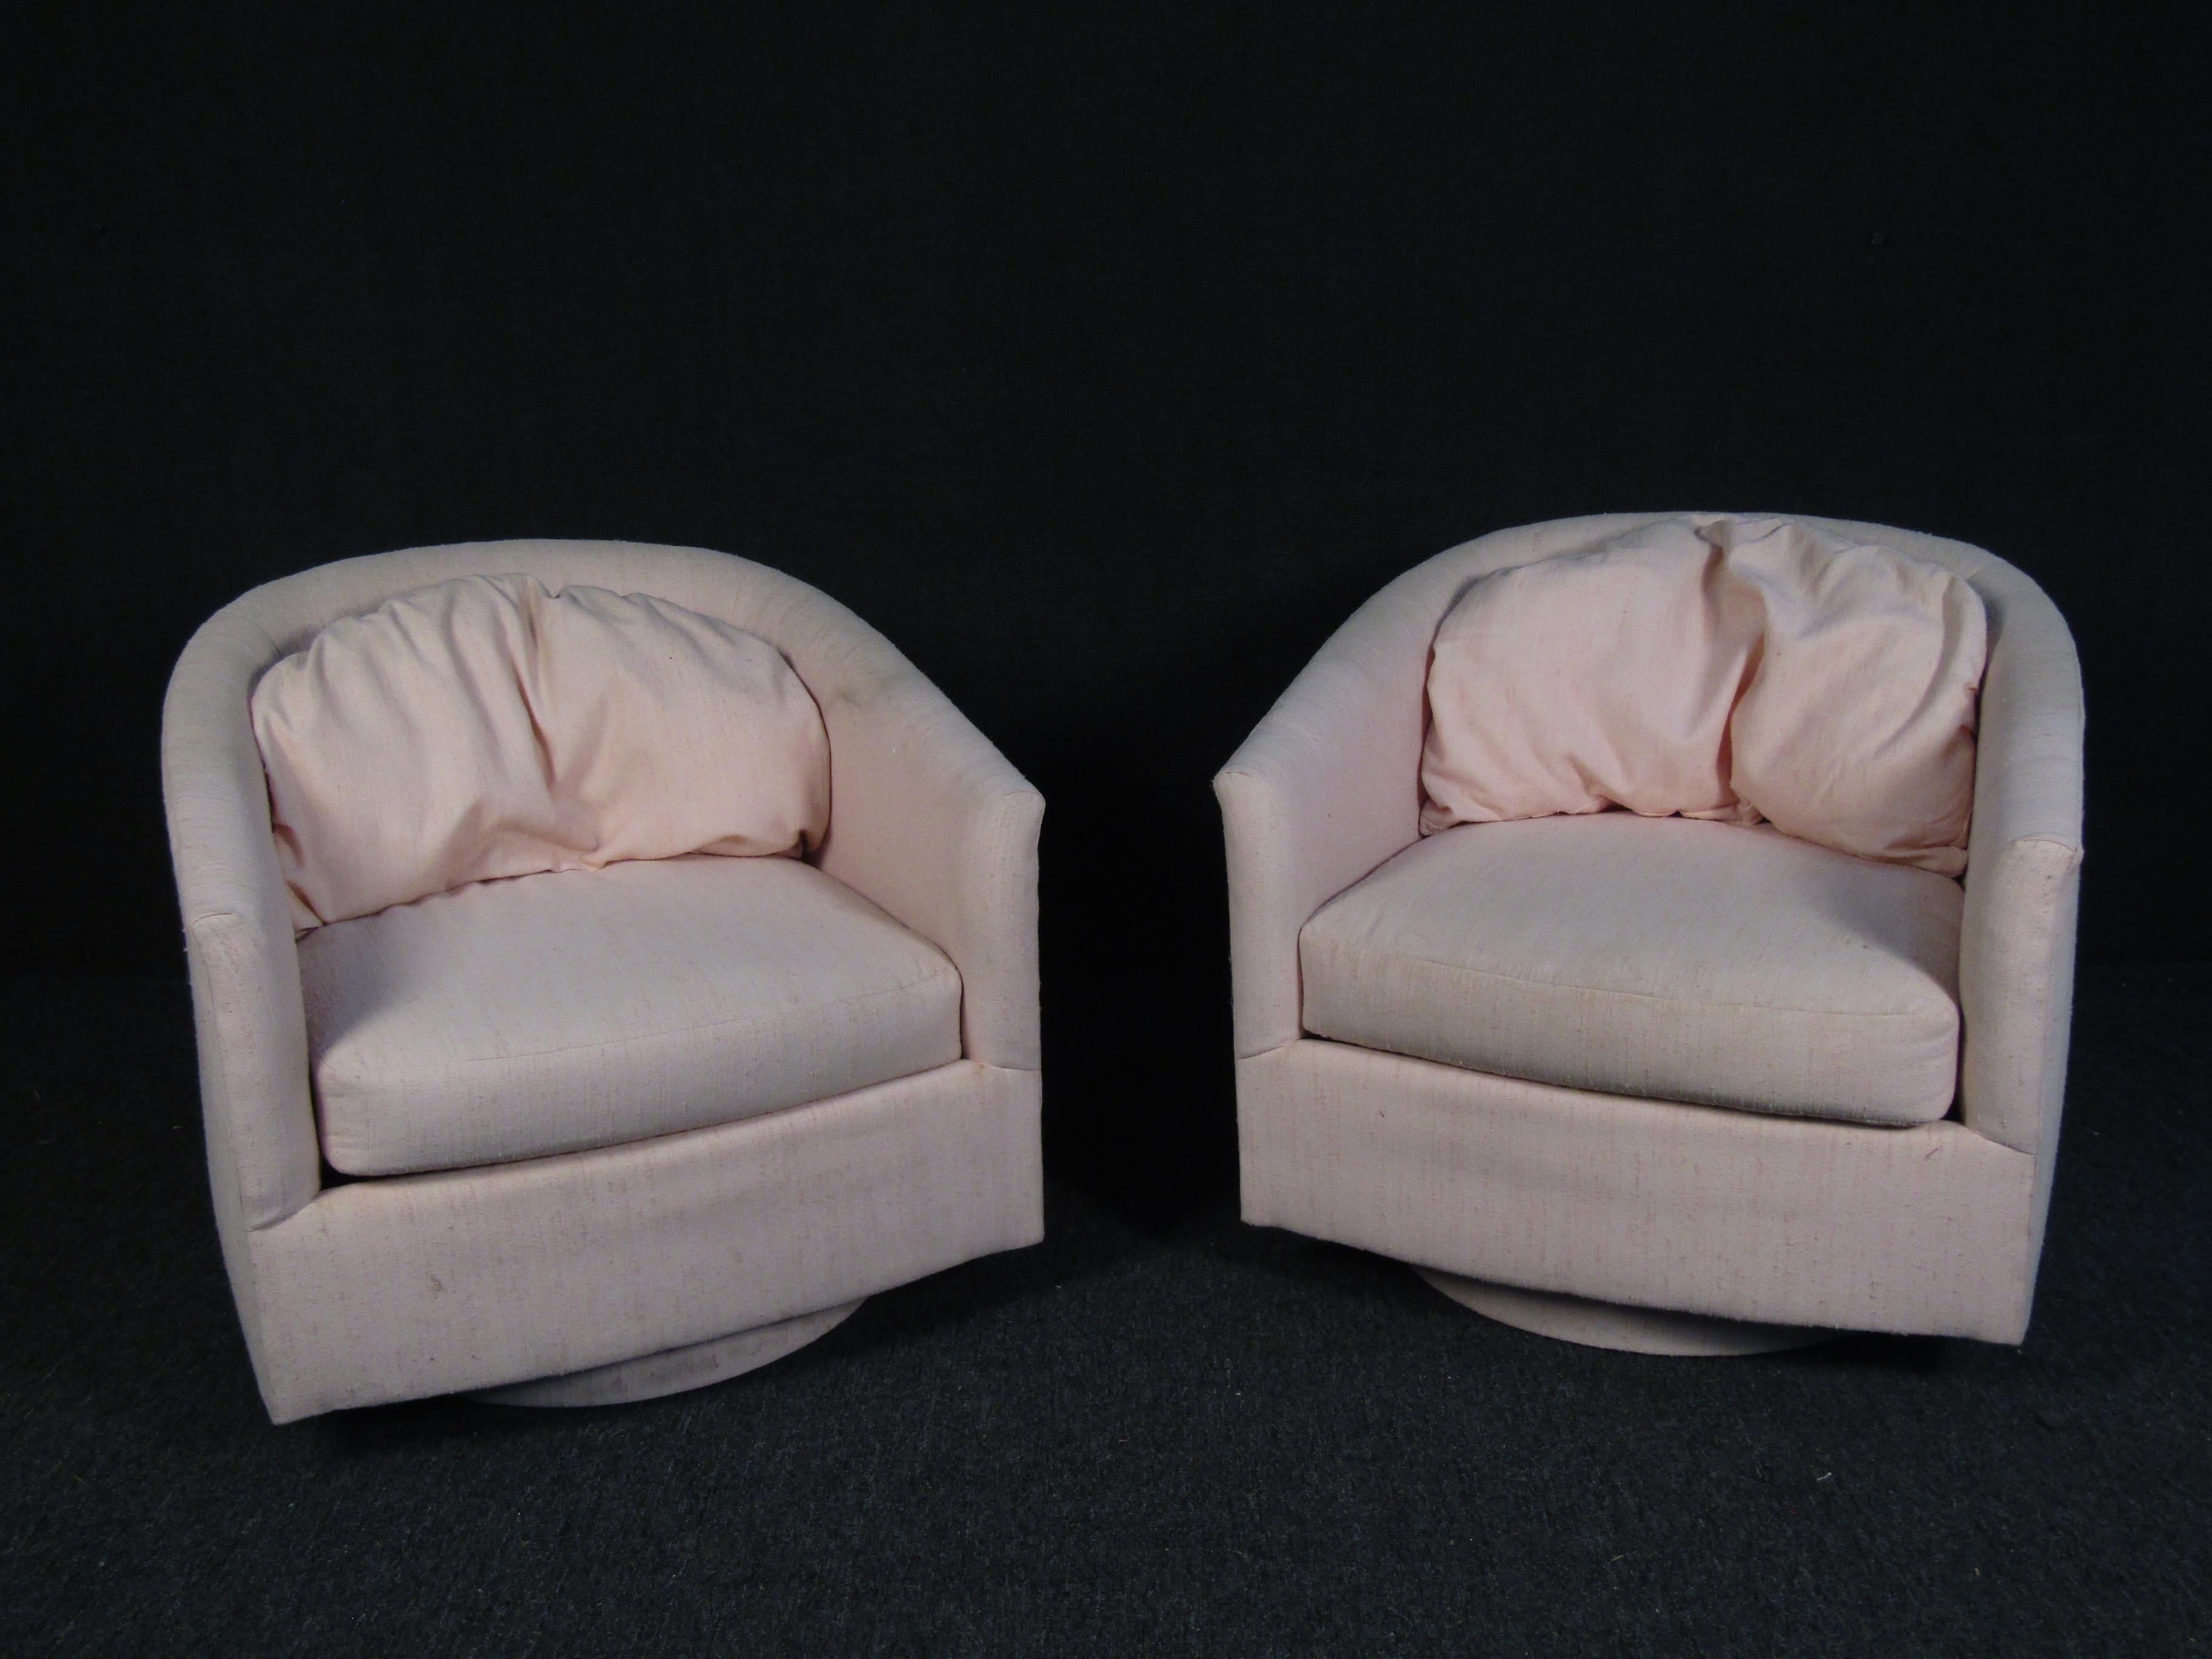 Une paire élégante de chaises vintage modernes à dossier en forme de tonneau, avec un dossier duveteux et un siège épais rembourré. Une base pivotante couverte offre la commodité sans sacrifier le style. Cette paire de chaises longues est le